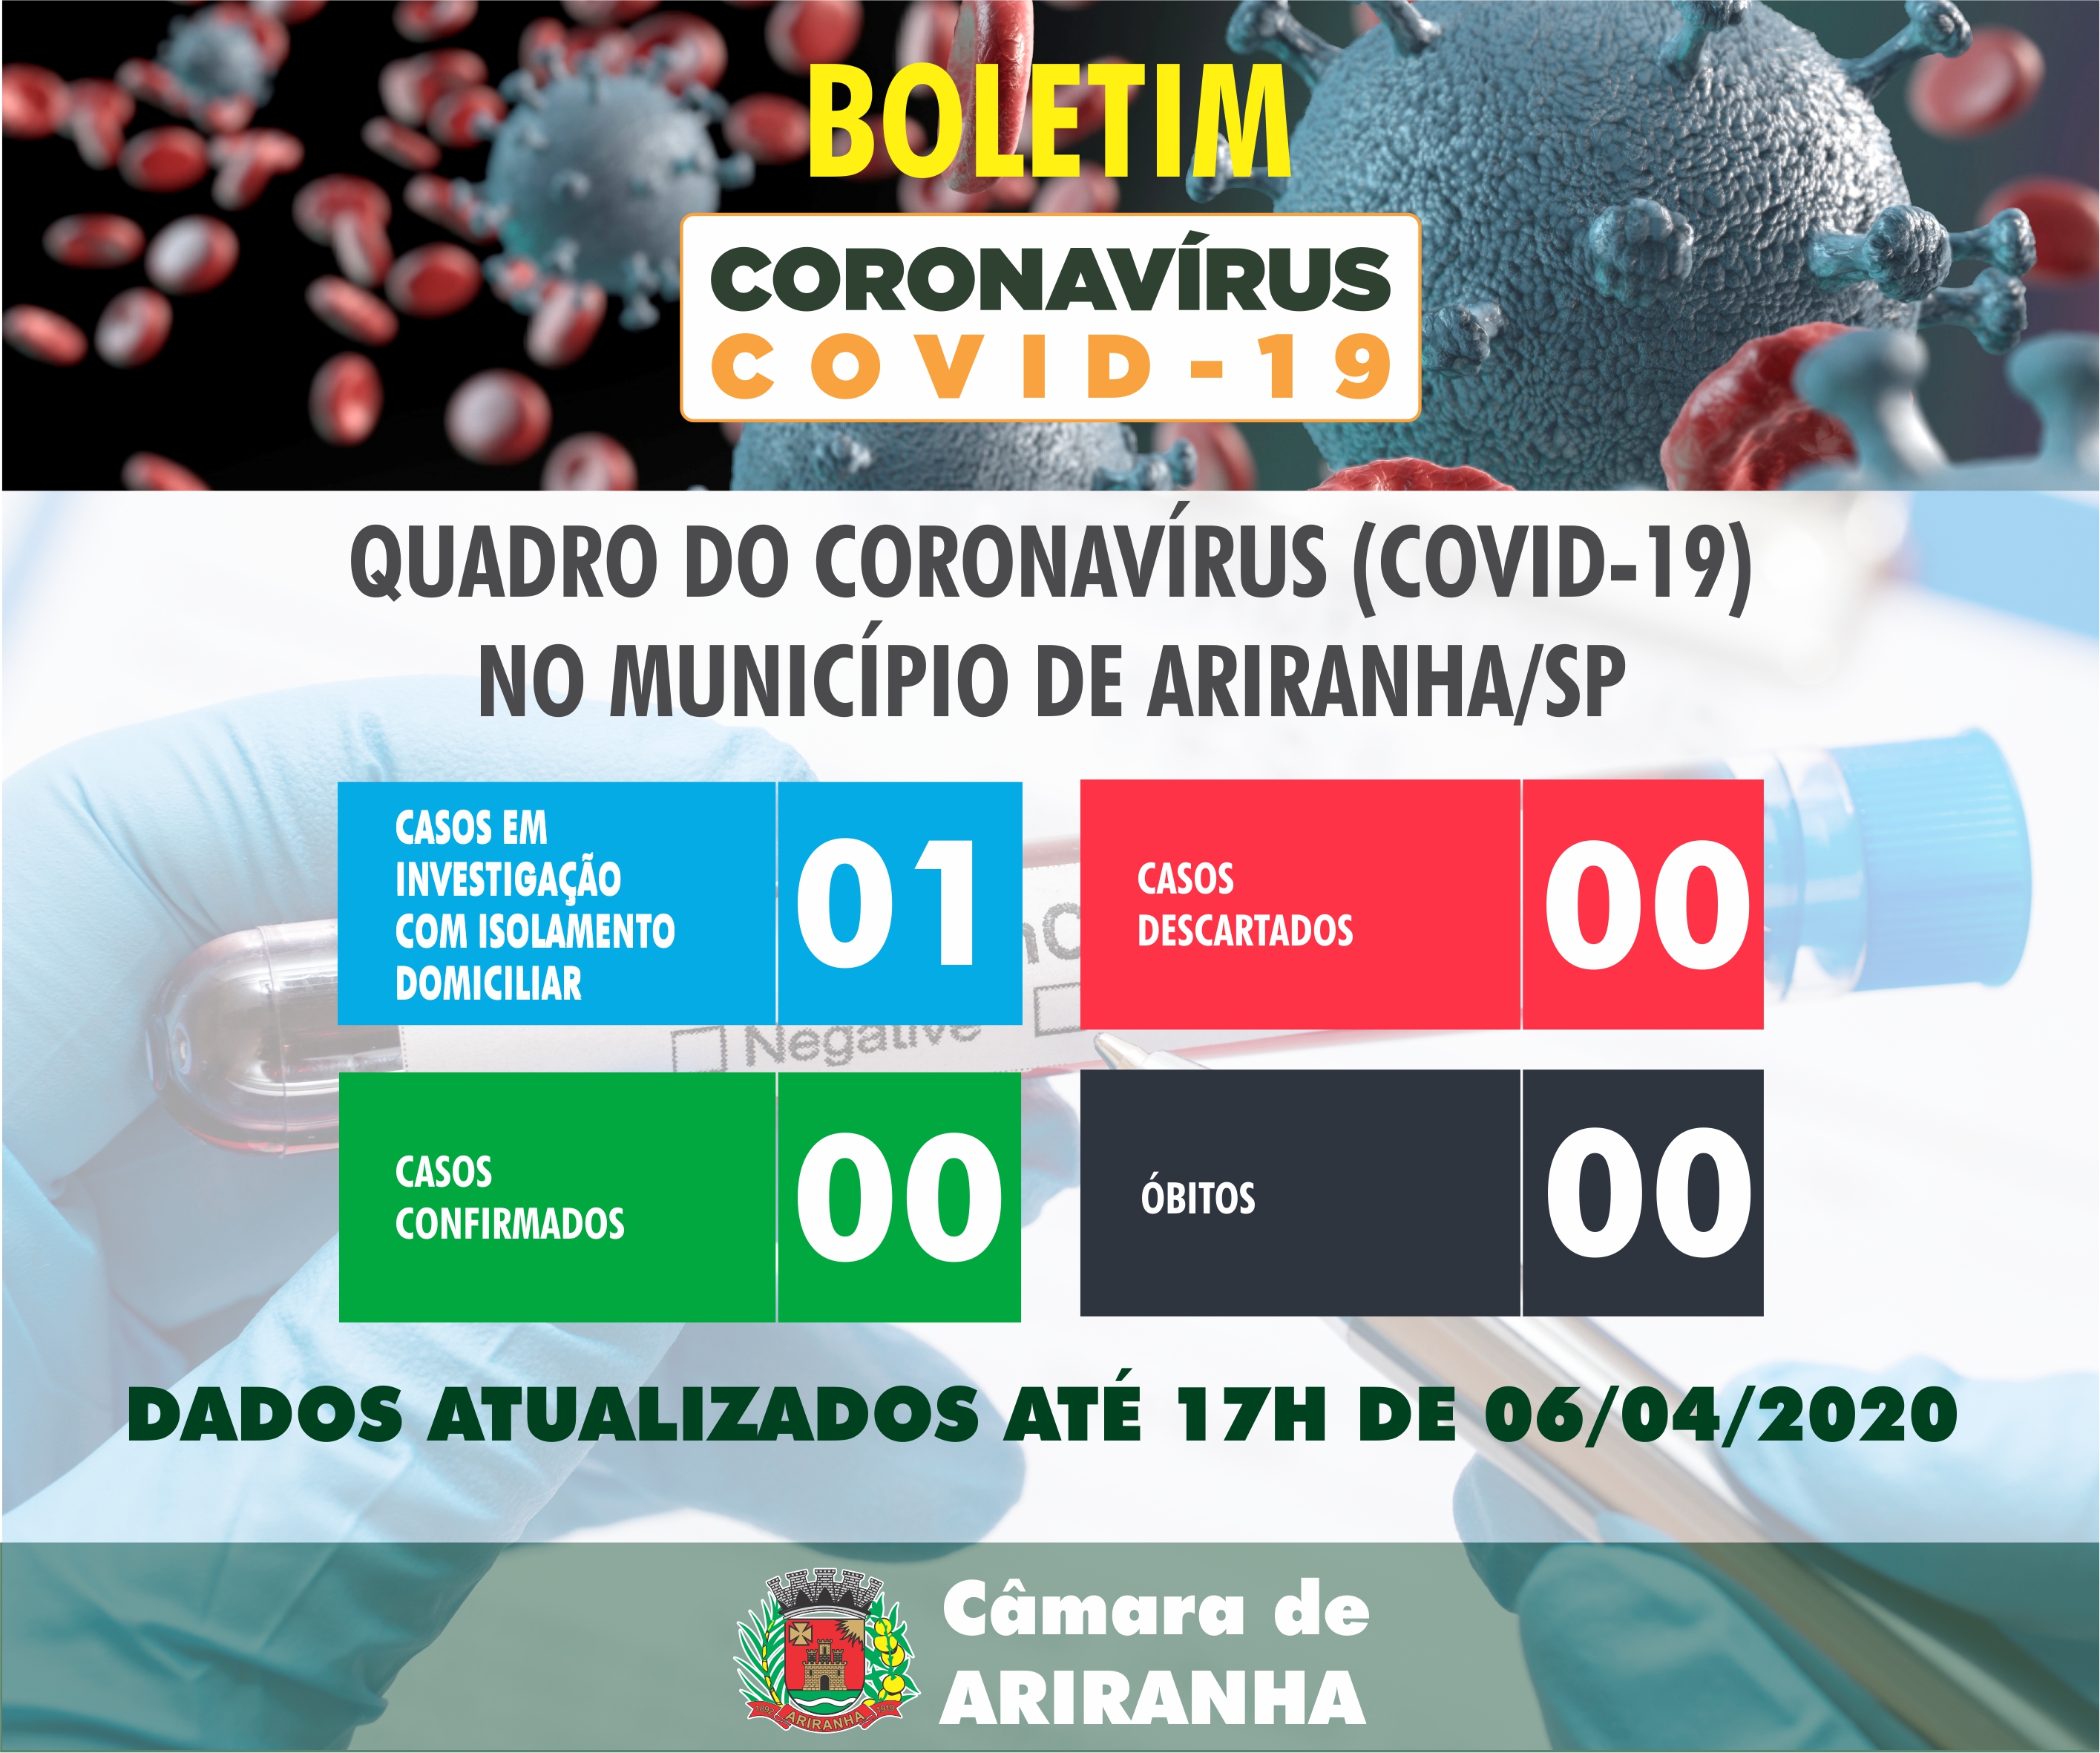 Boletim diário Corona Vírus (COVID-19) – 06/04/2020